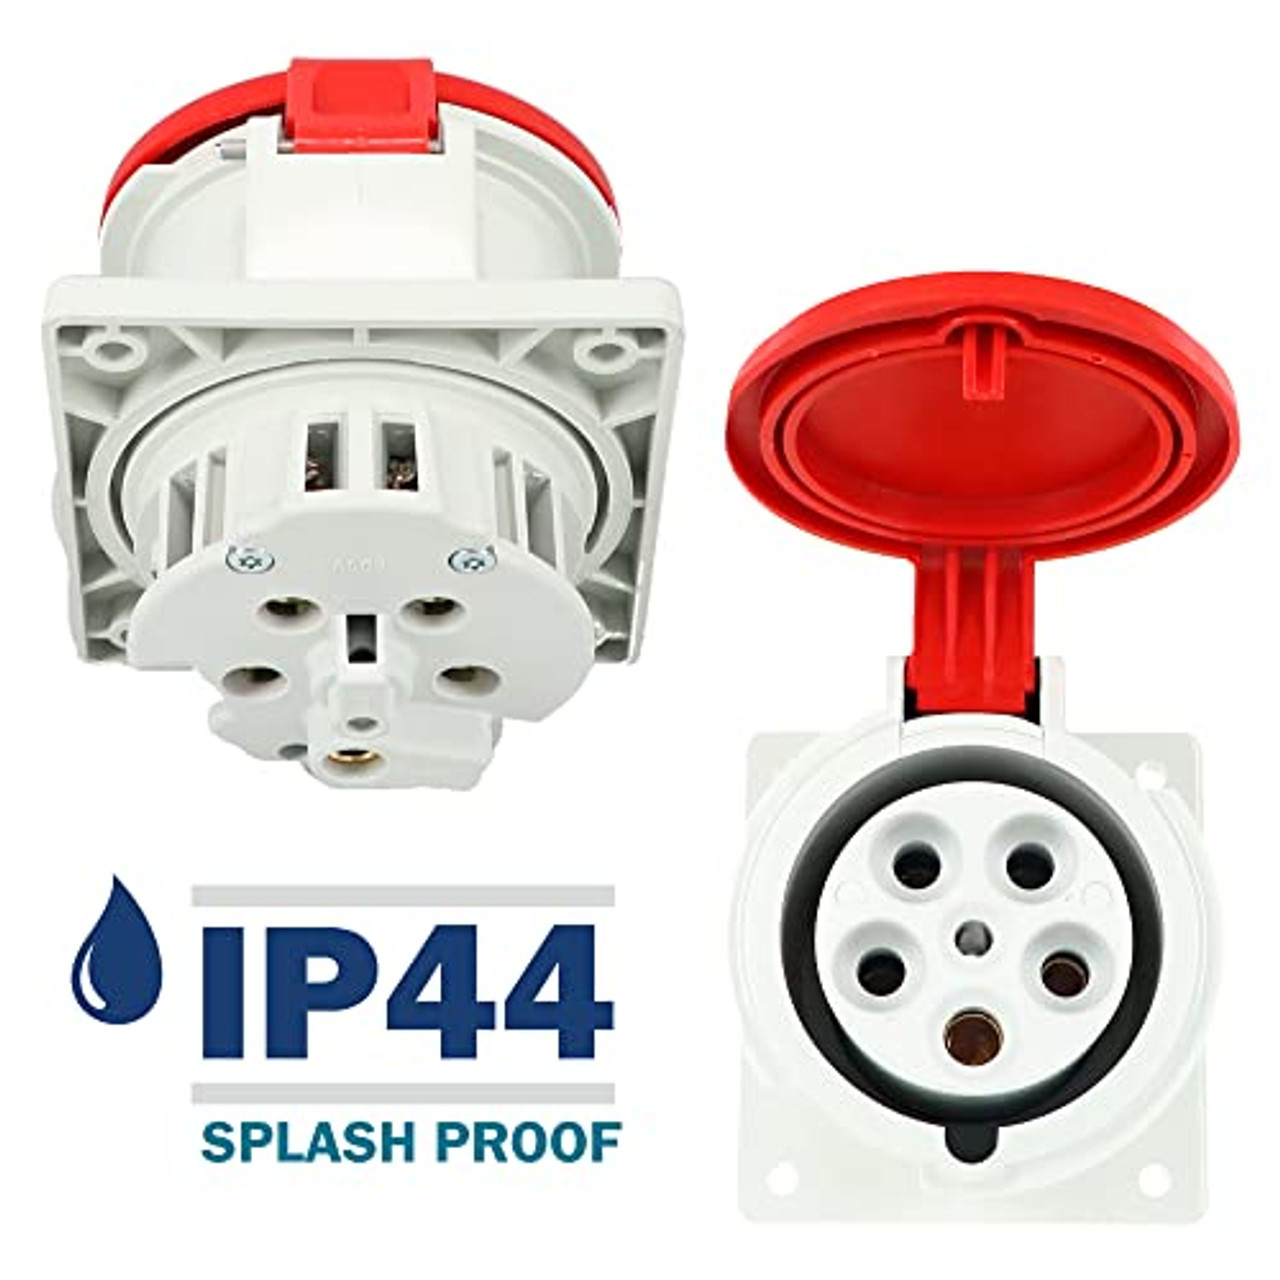 460 Receptacle carries an environmental rating of IP44 Splashproof